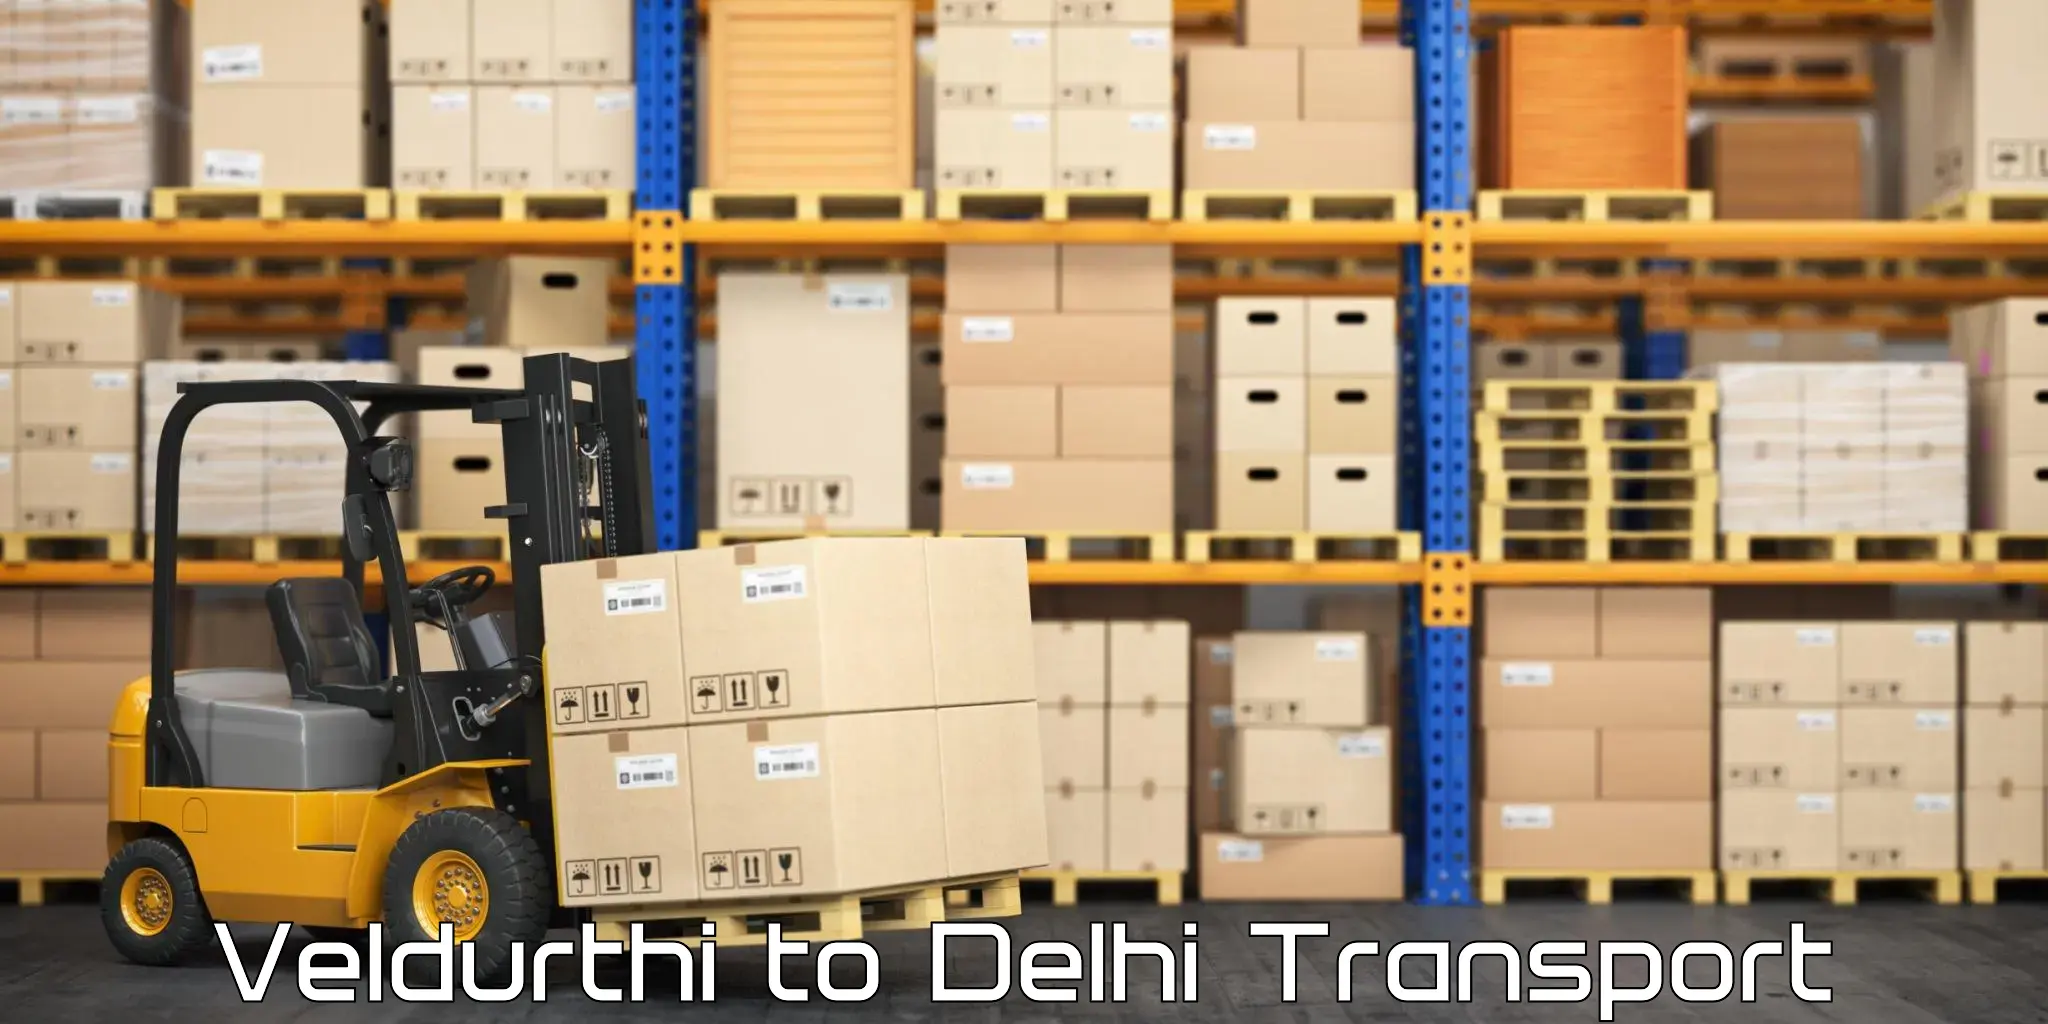 Lorry transport service Veldurthi to University of Delhi